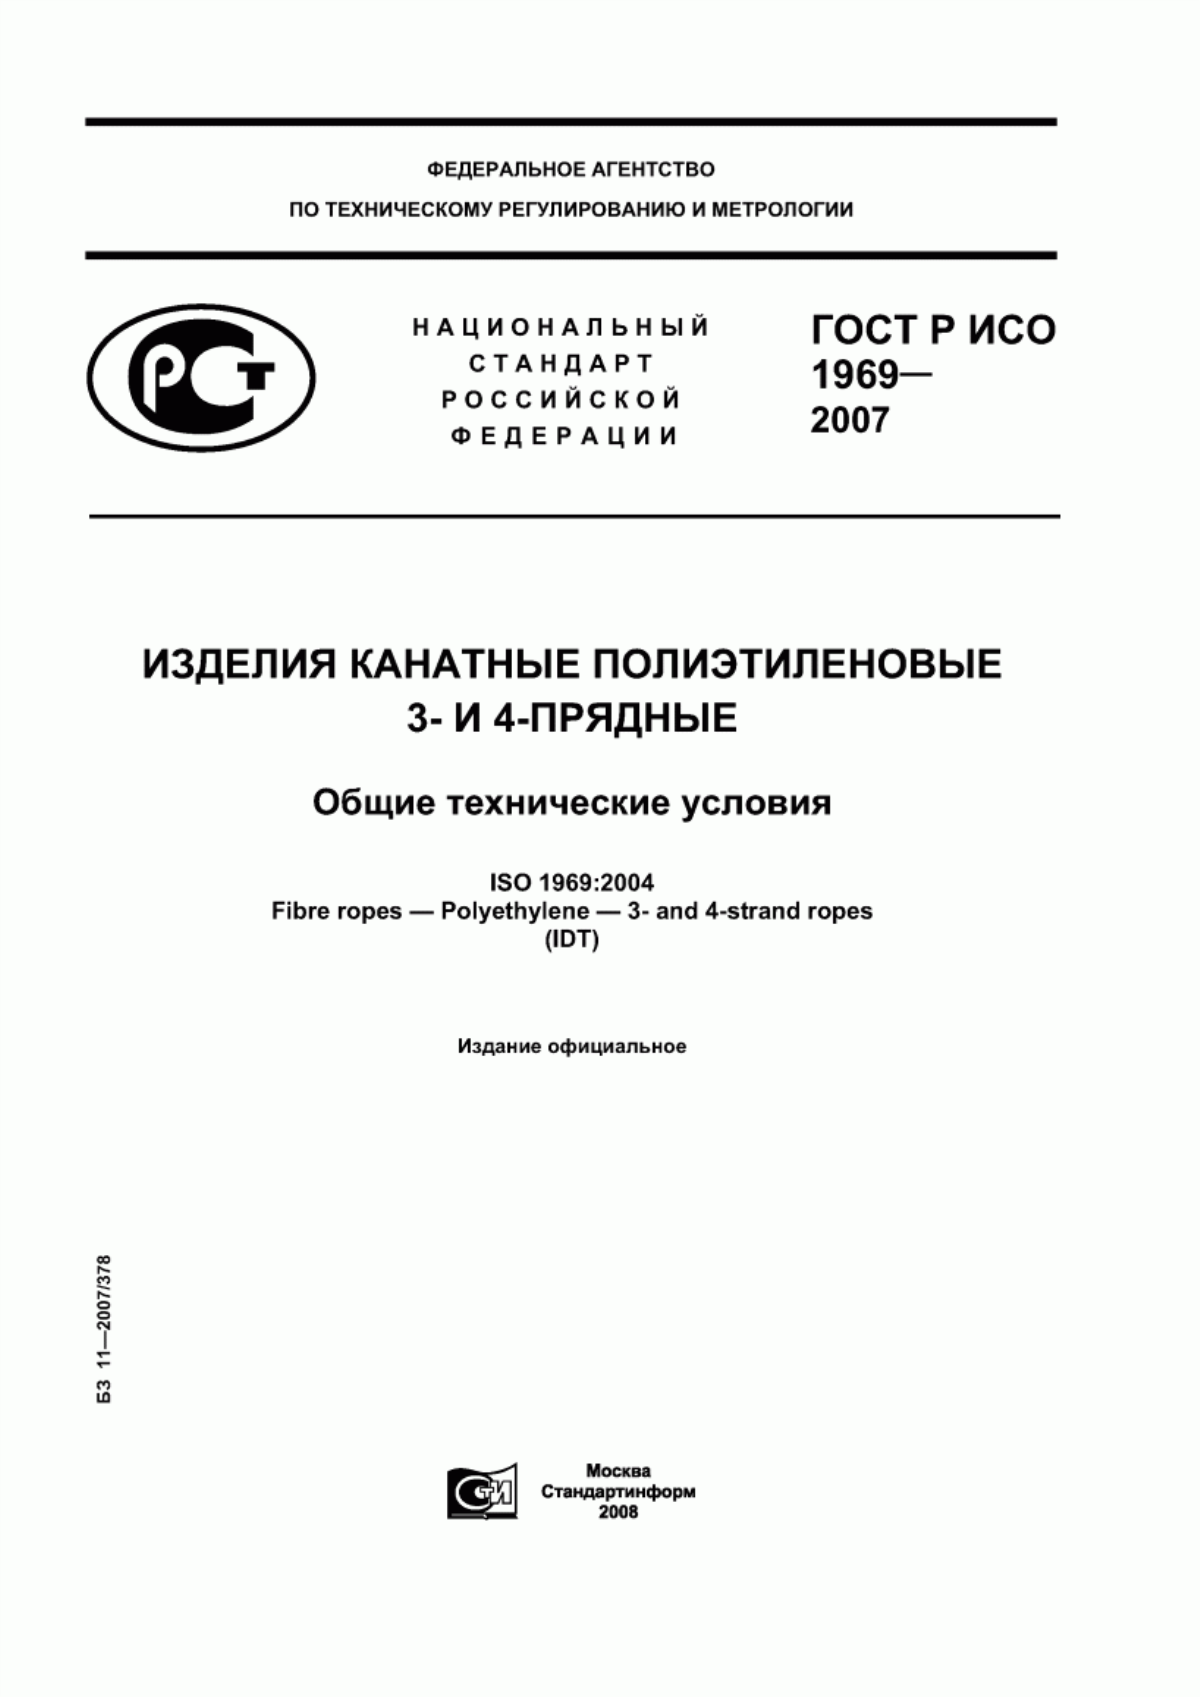 ГОСТ Р ИСО 1969-2007 Изделия канатные полиэтиленовые 3- и 4-прядные. Общие технические условия